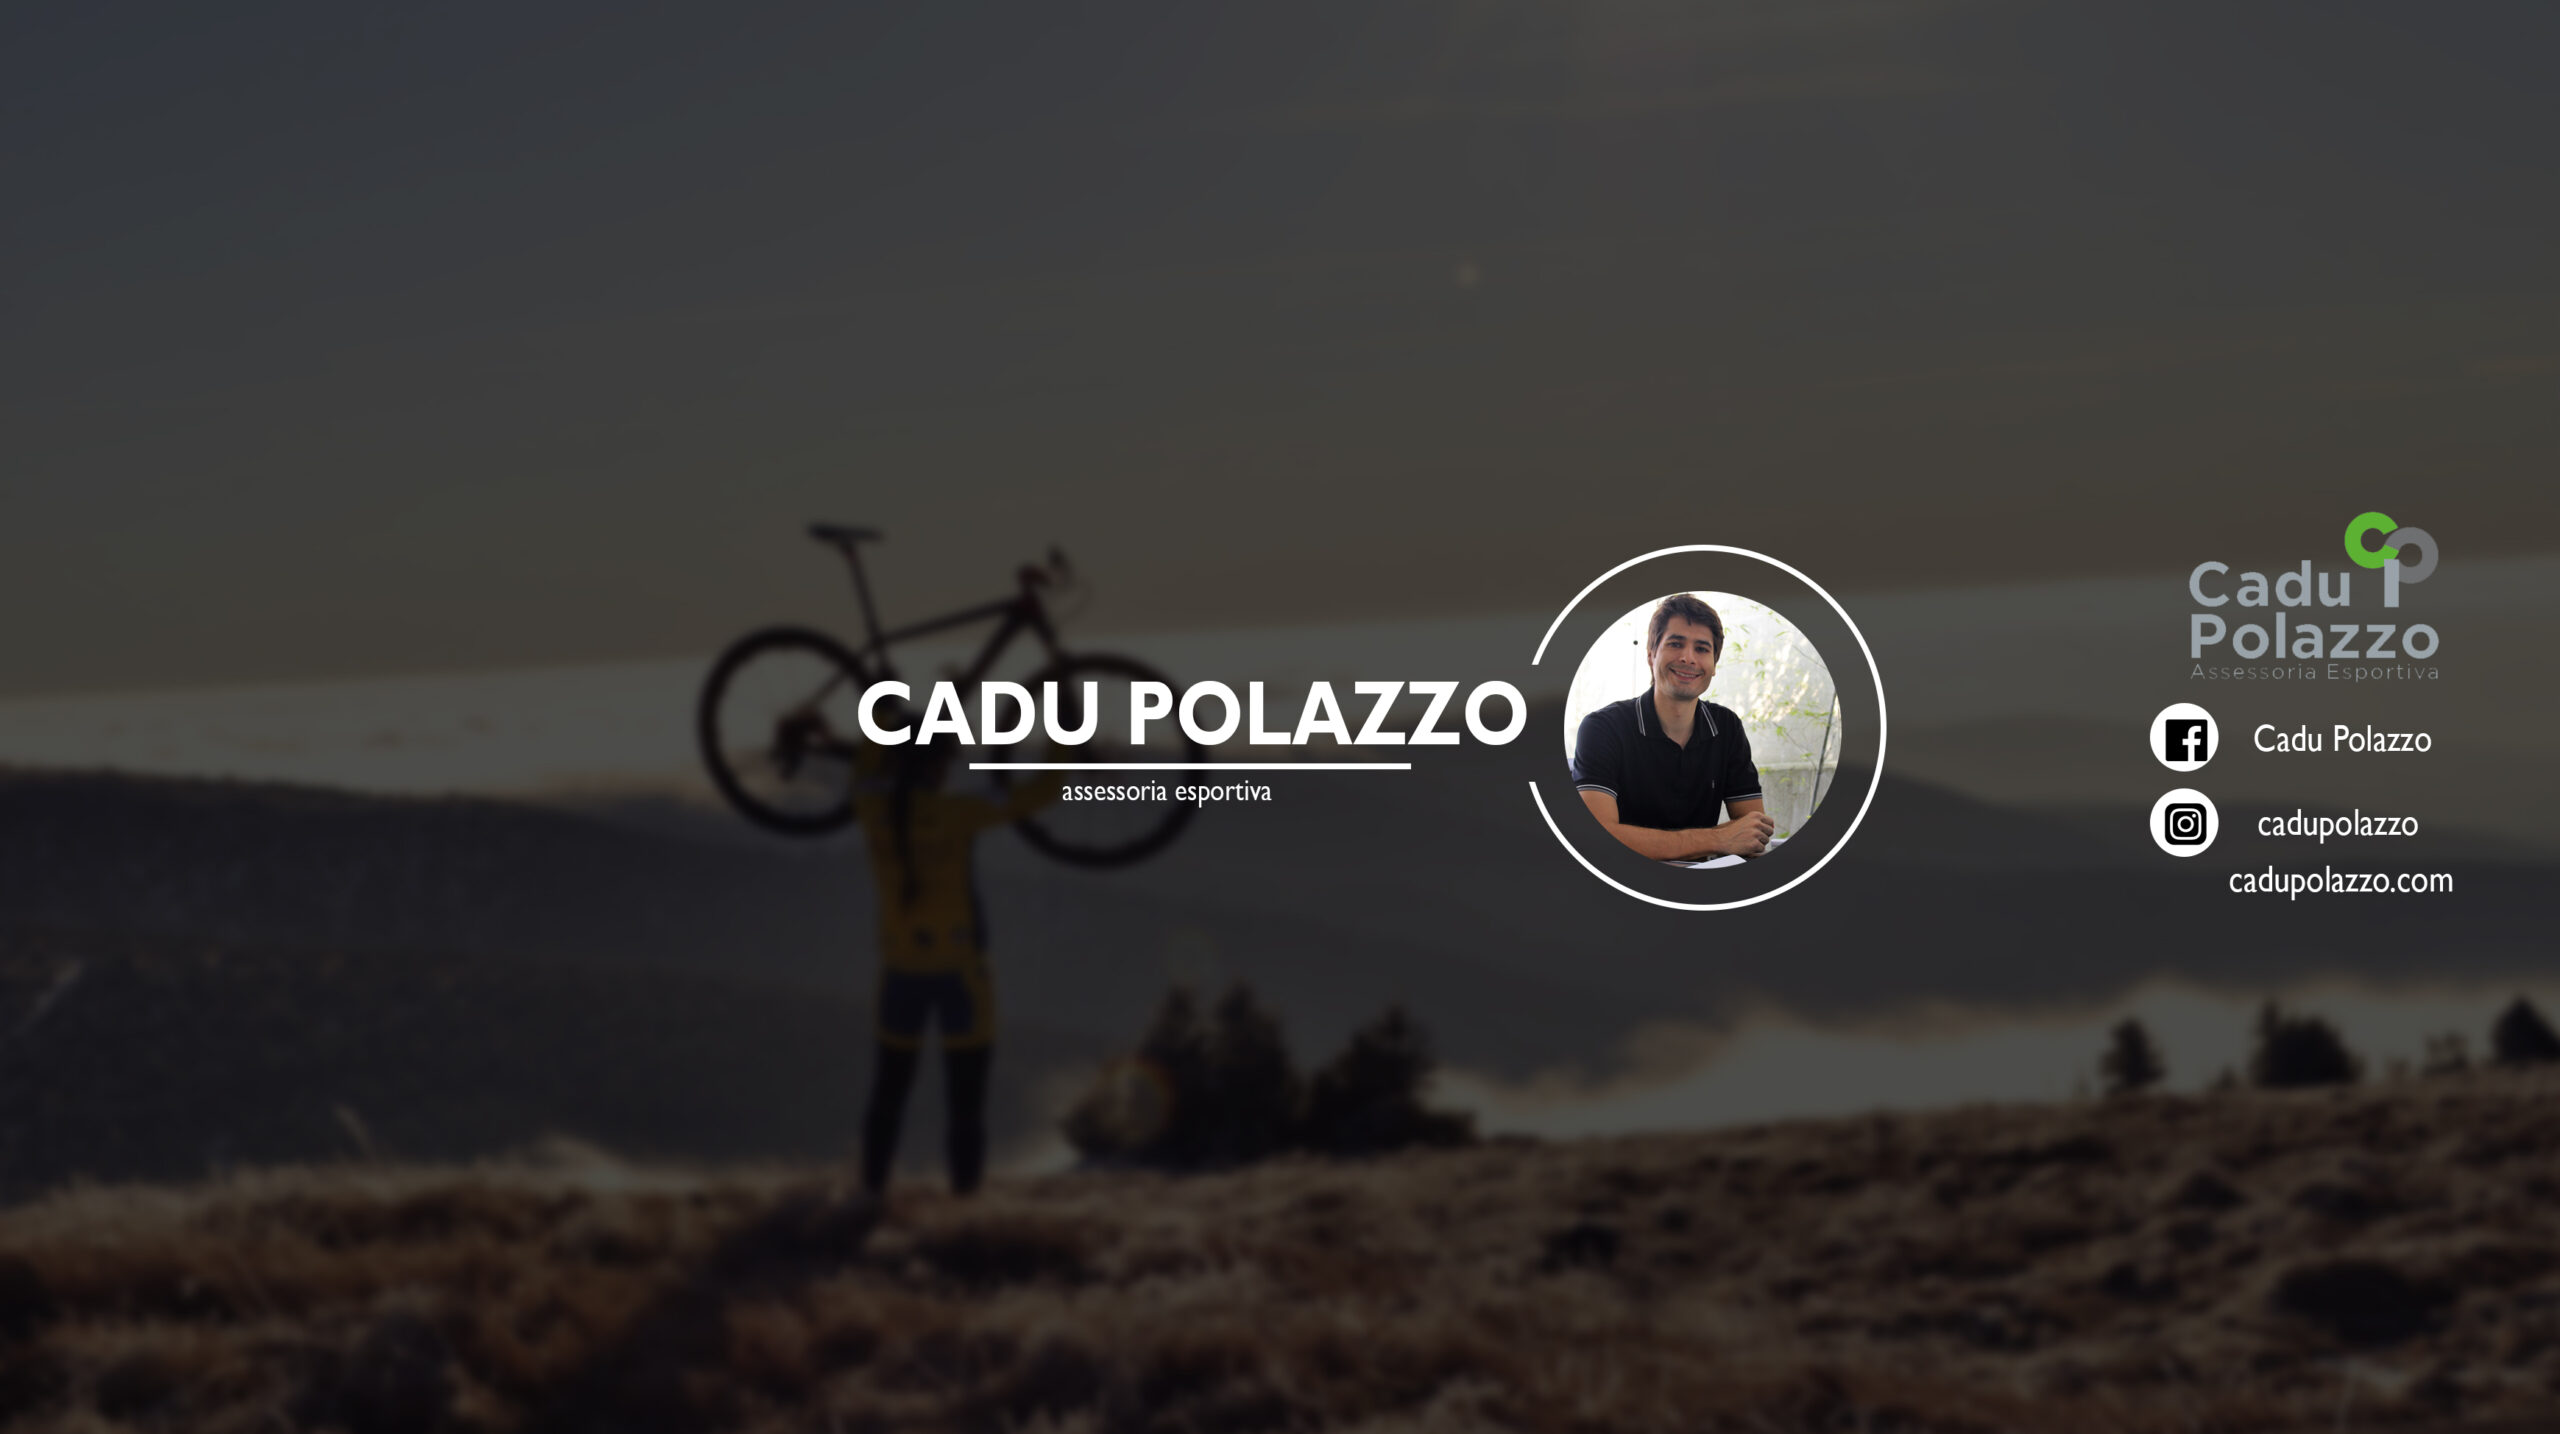 Conheça o canal do Cadu Polazzo no YouTube